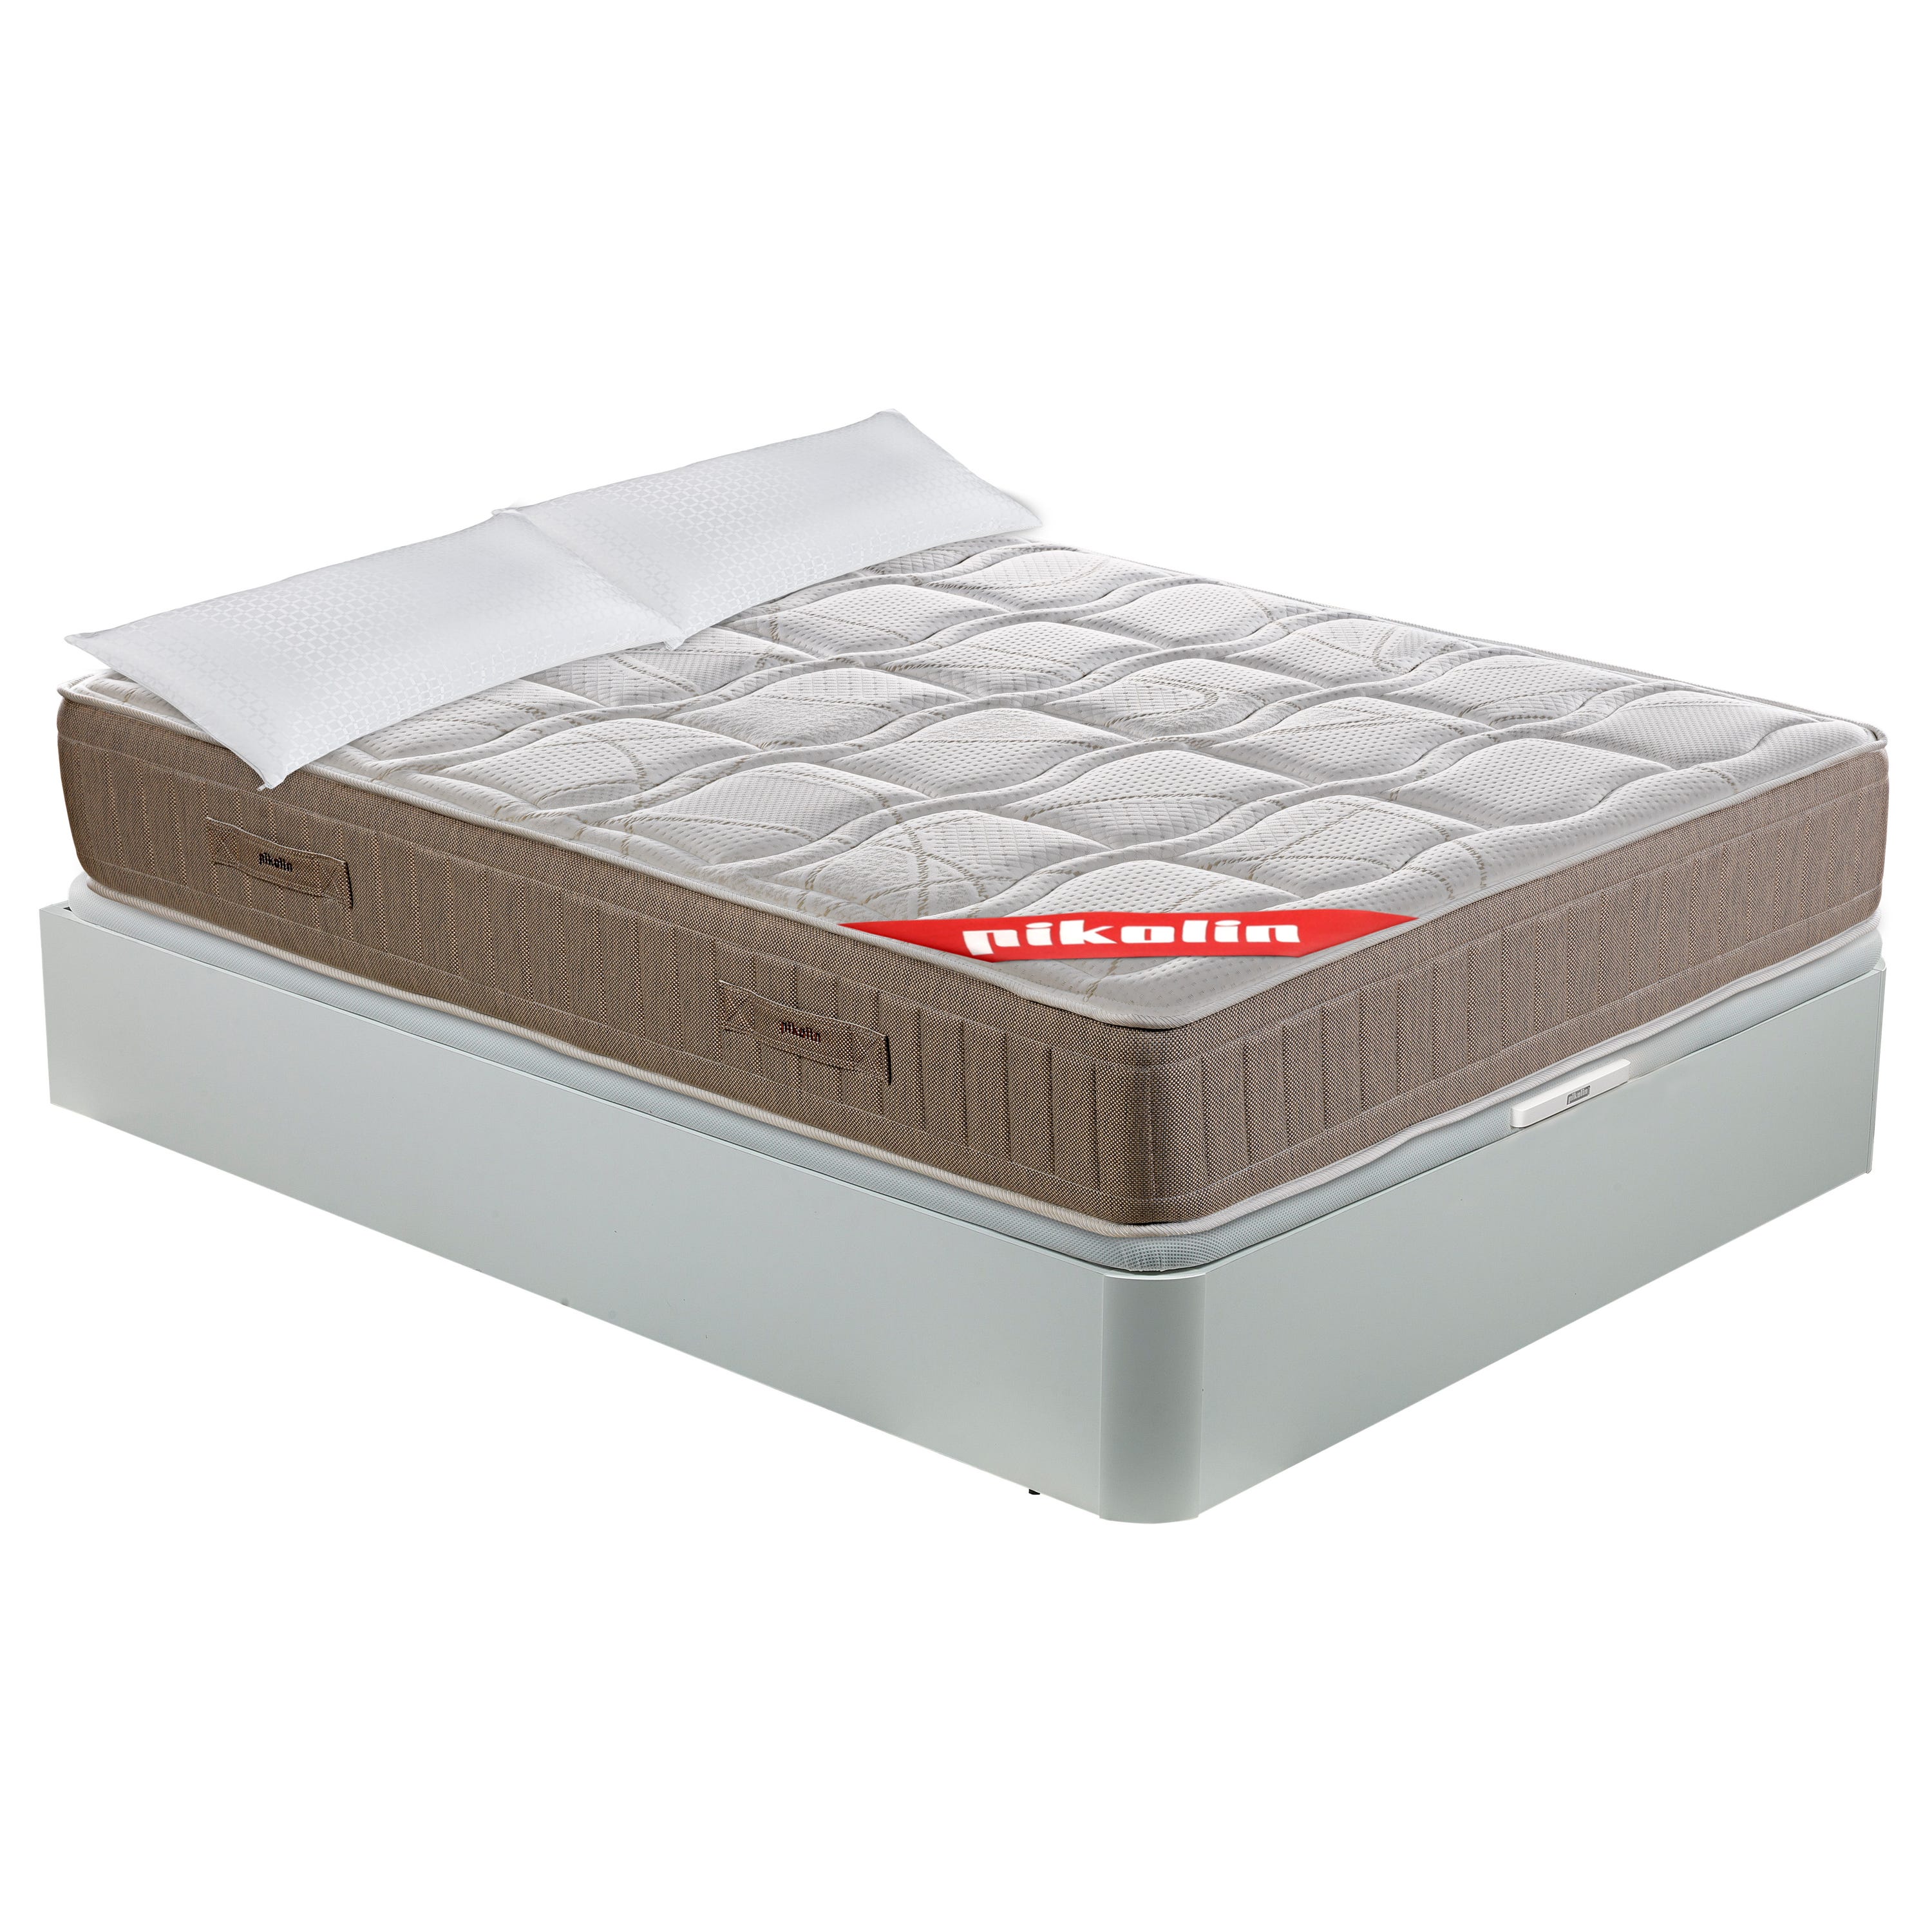 ROYAL SLEEP - Pack Montaje y Retirada de Usado Incluido, colchón